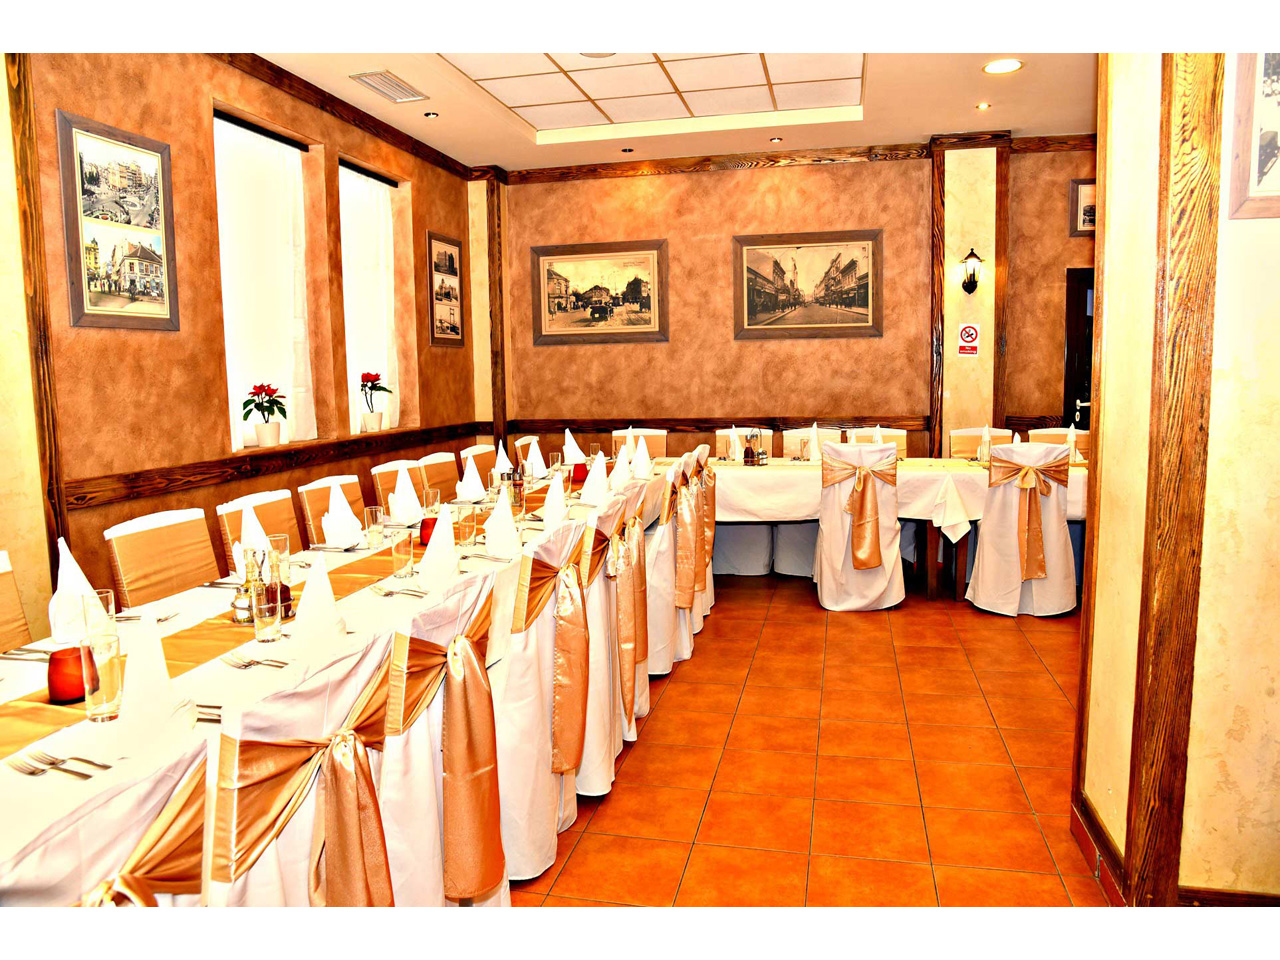 DREN RESTAURANT Restaurants for weddings, celebrations Belgrade - Photo 5